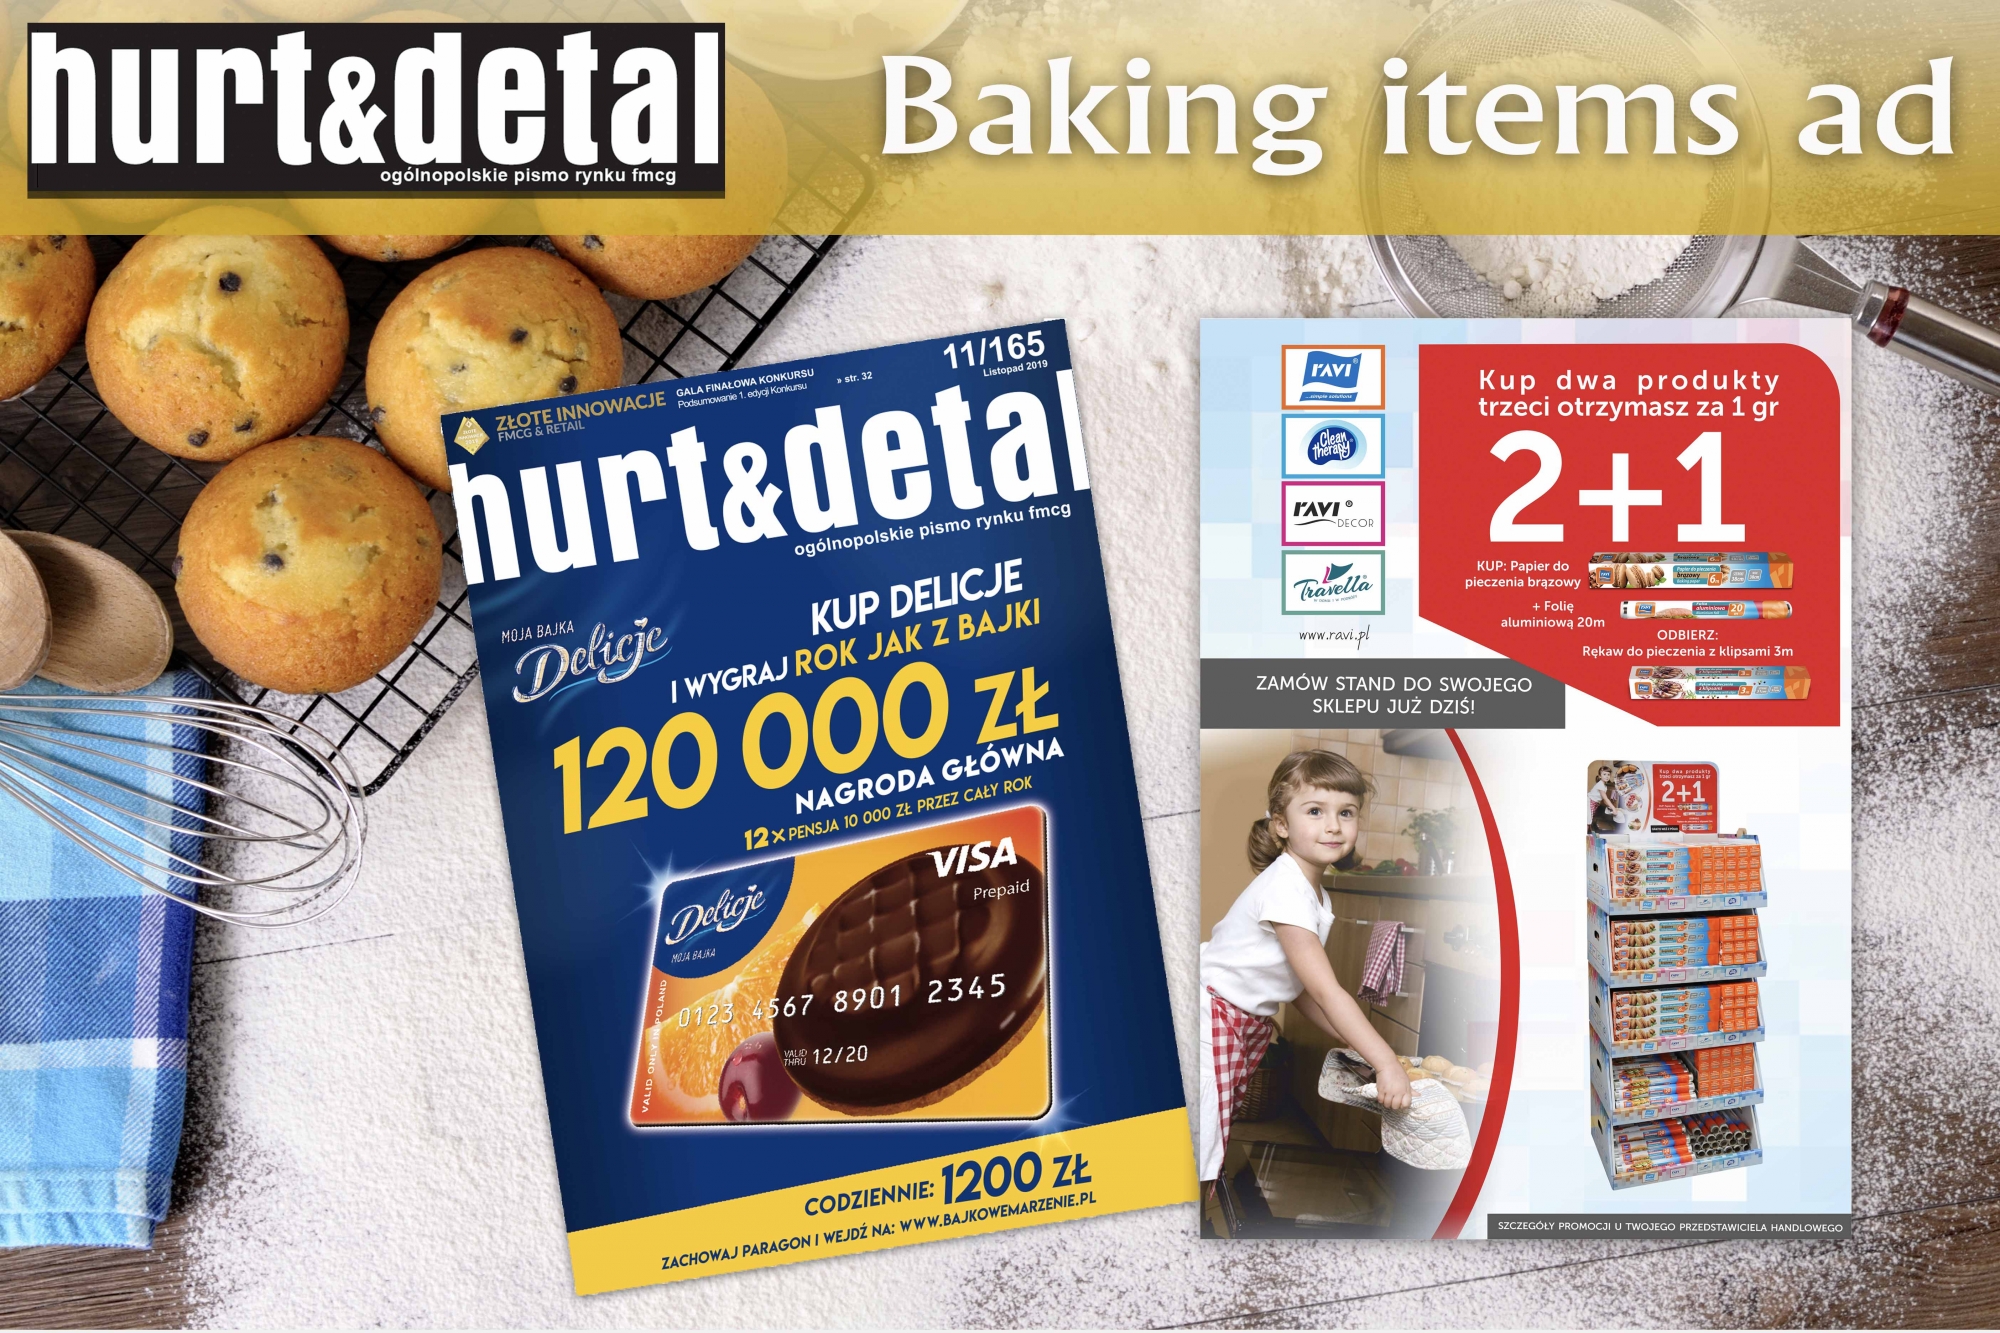 November 2019 Baking items ad.